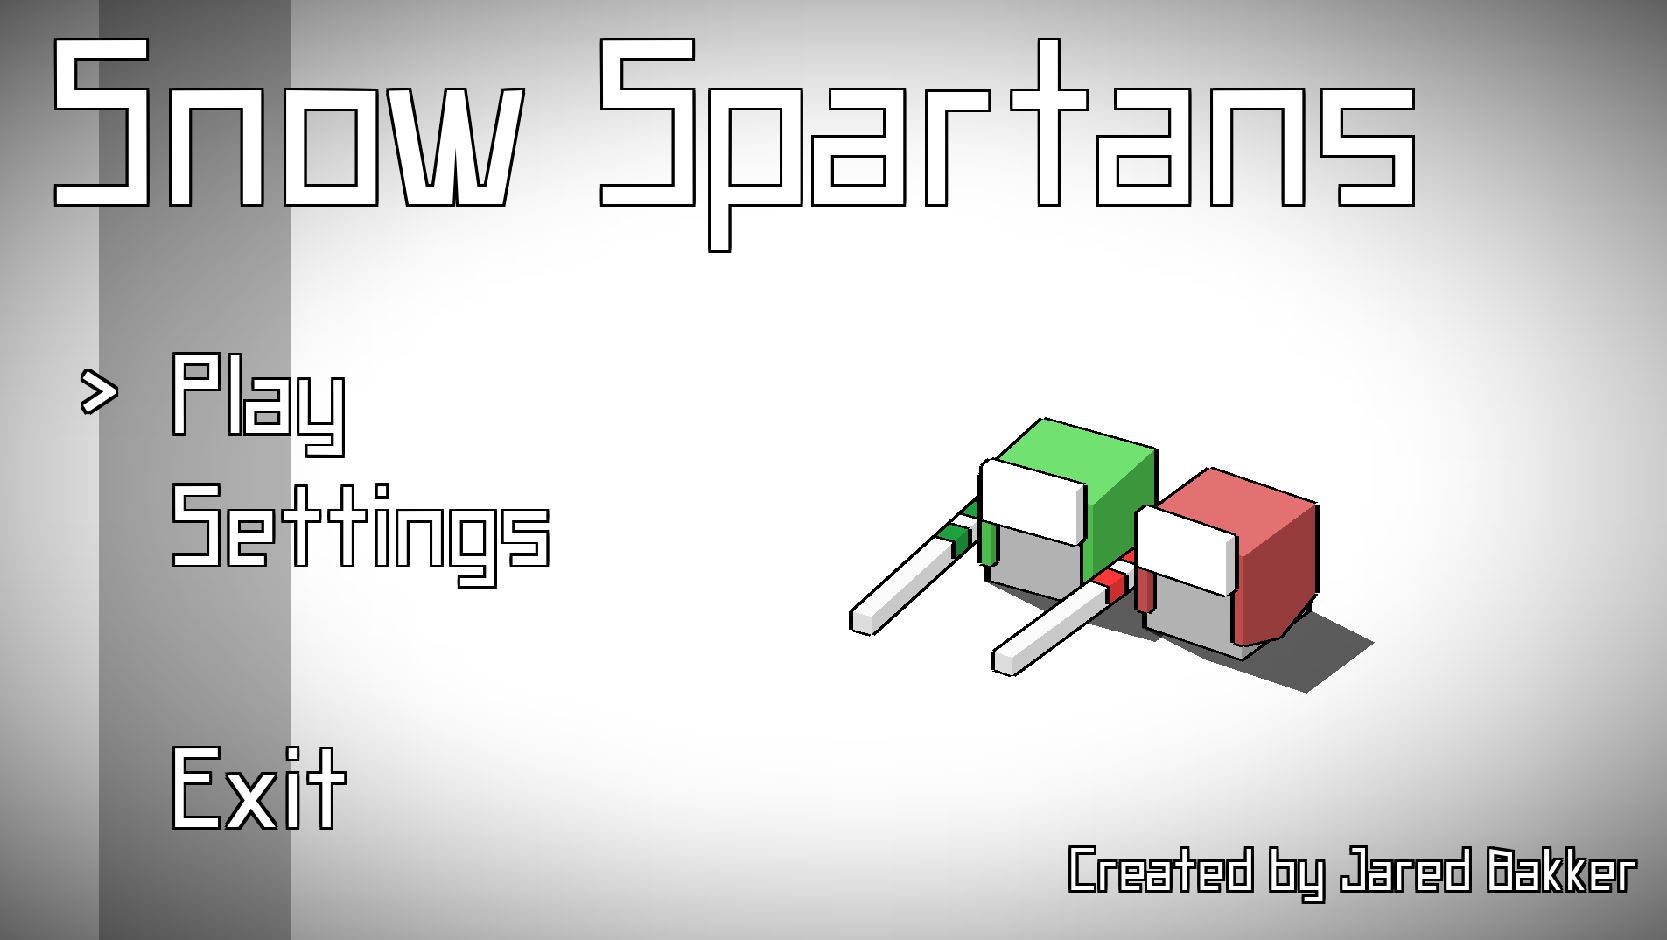 Stick Spartans screenshot